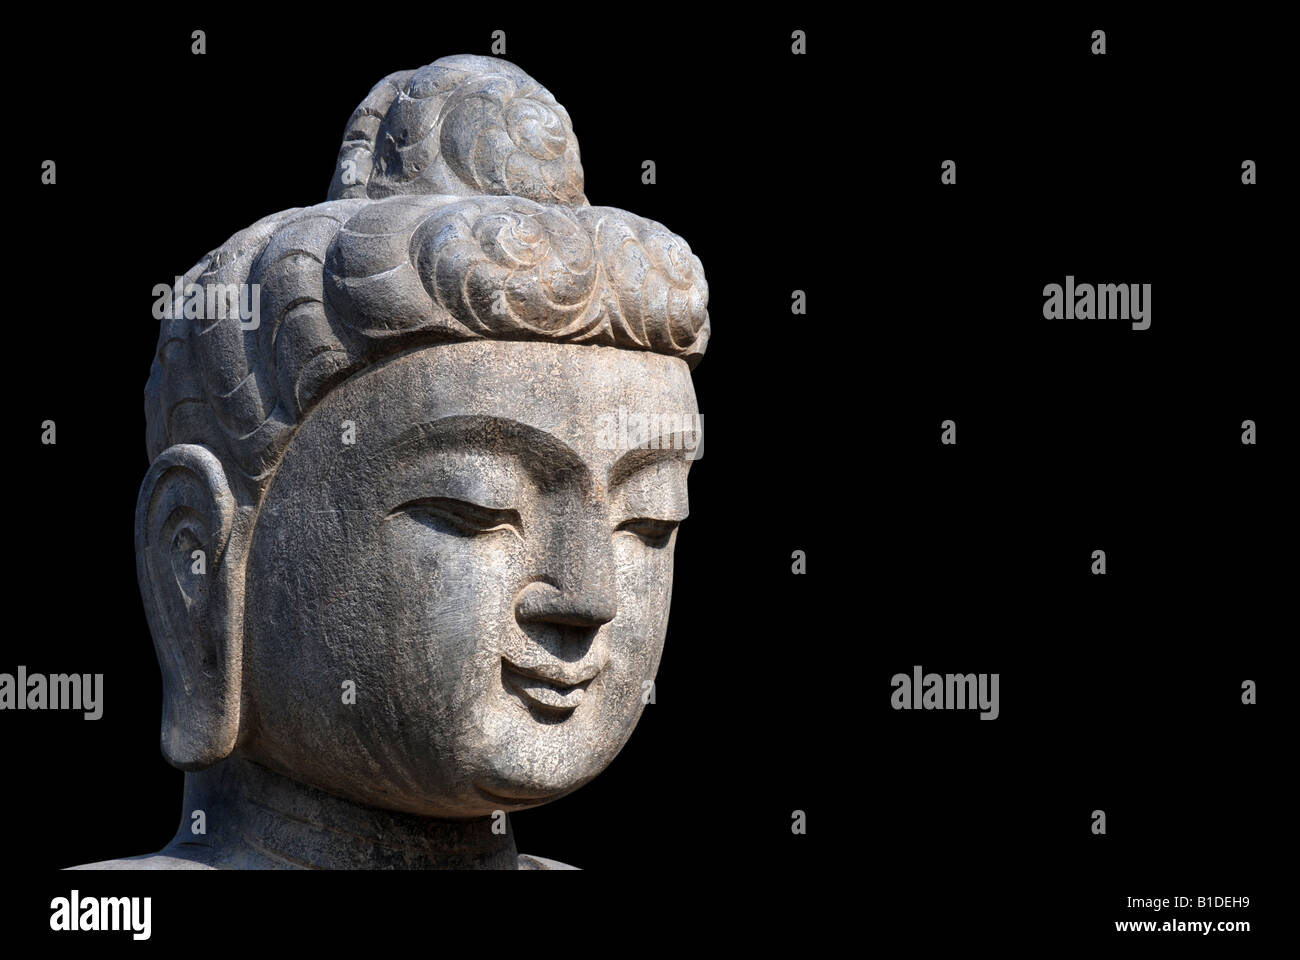 stone head of bodhisattva in Beijing,China Stock Photo